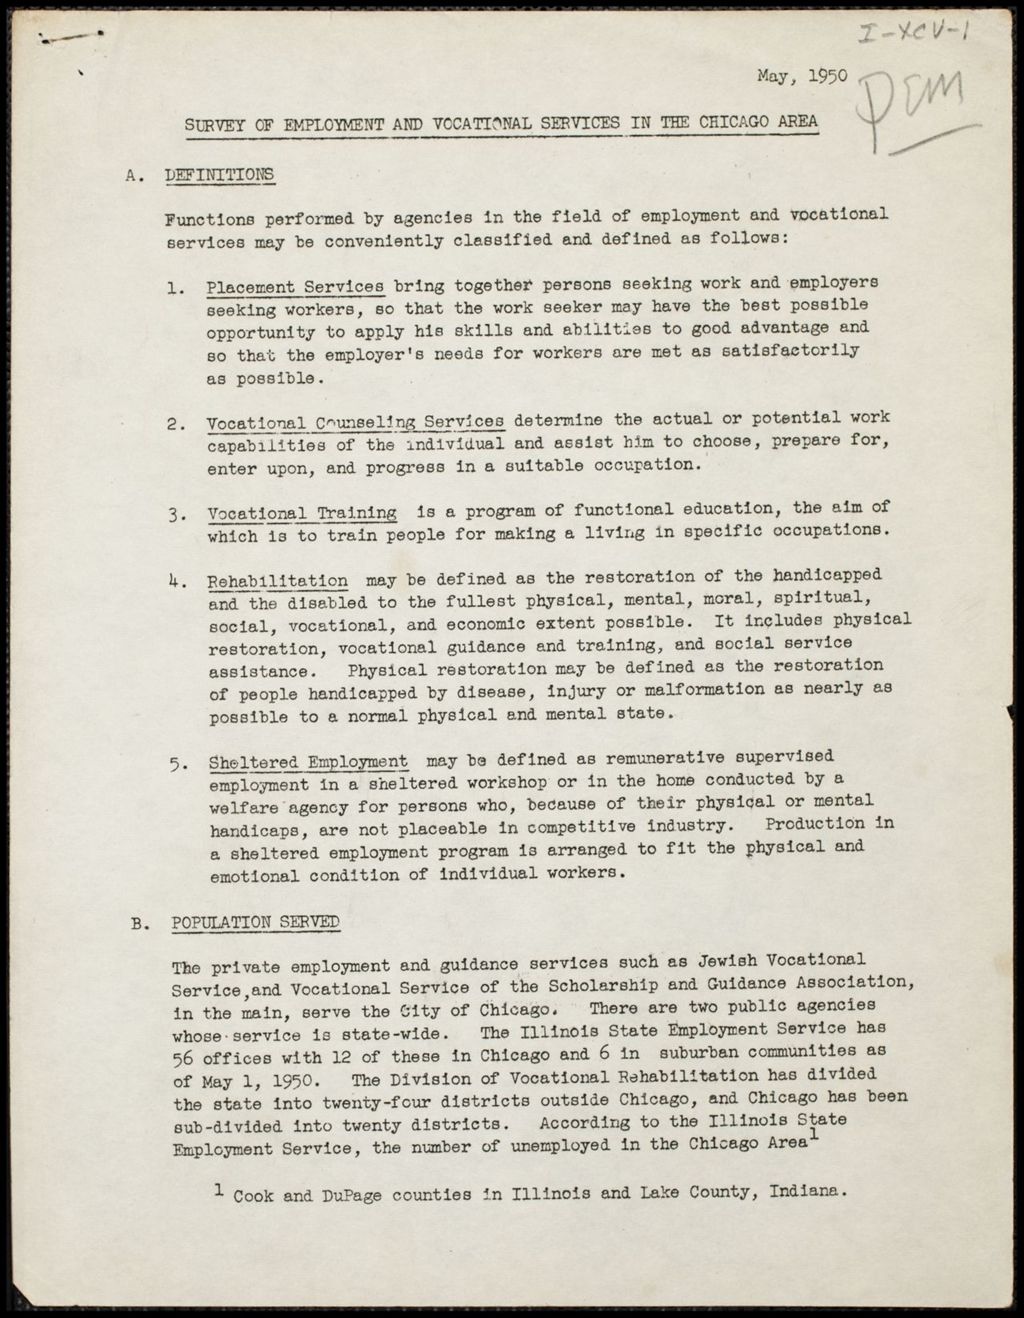 Miniature of Guidance Association, 1950-1954 (Folder I-2778)